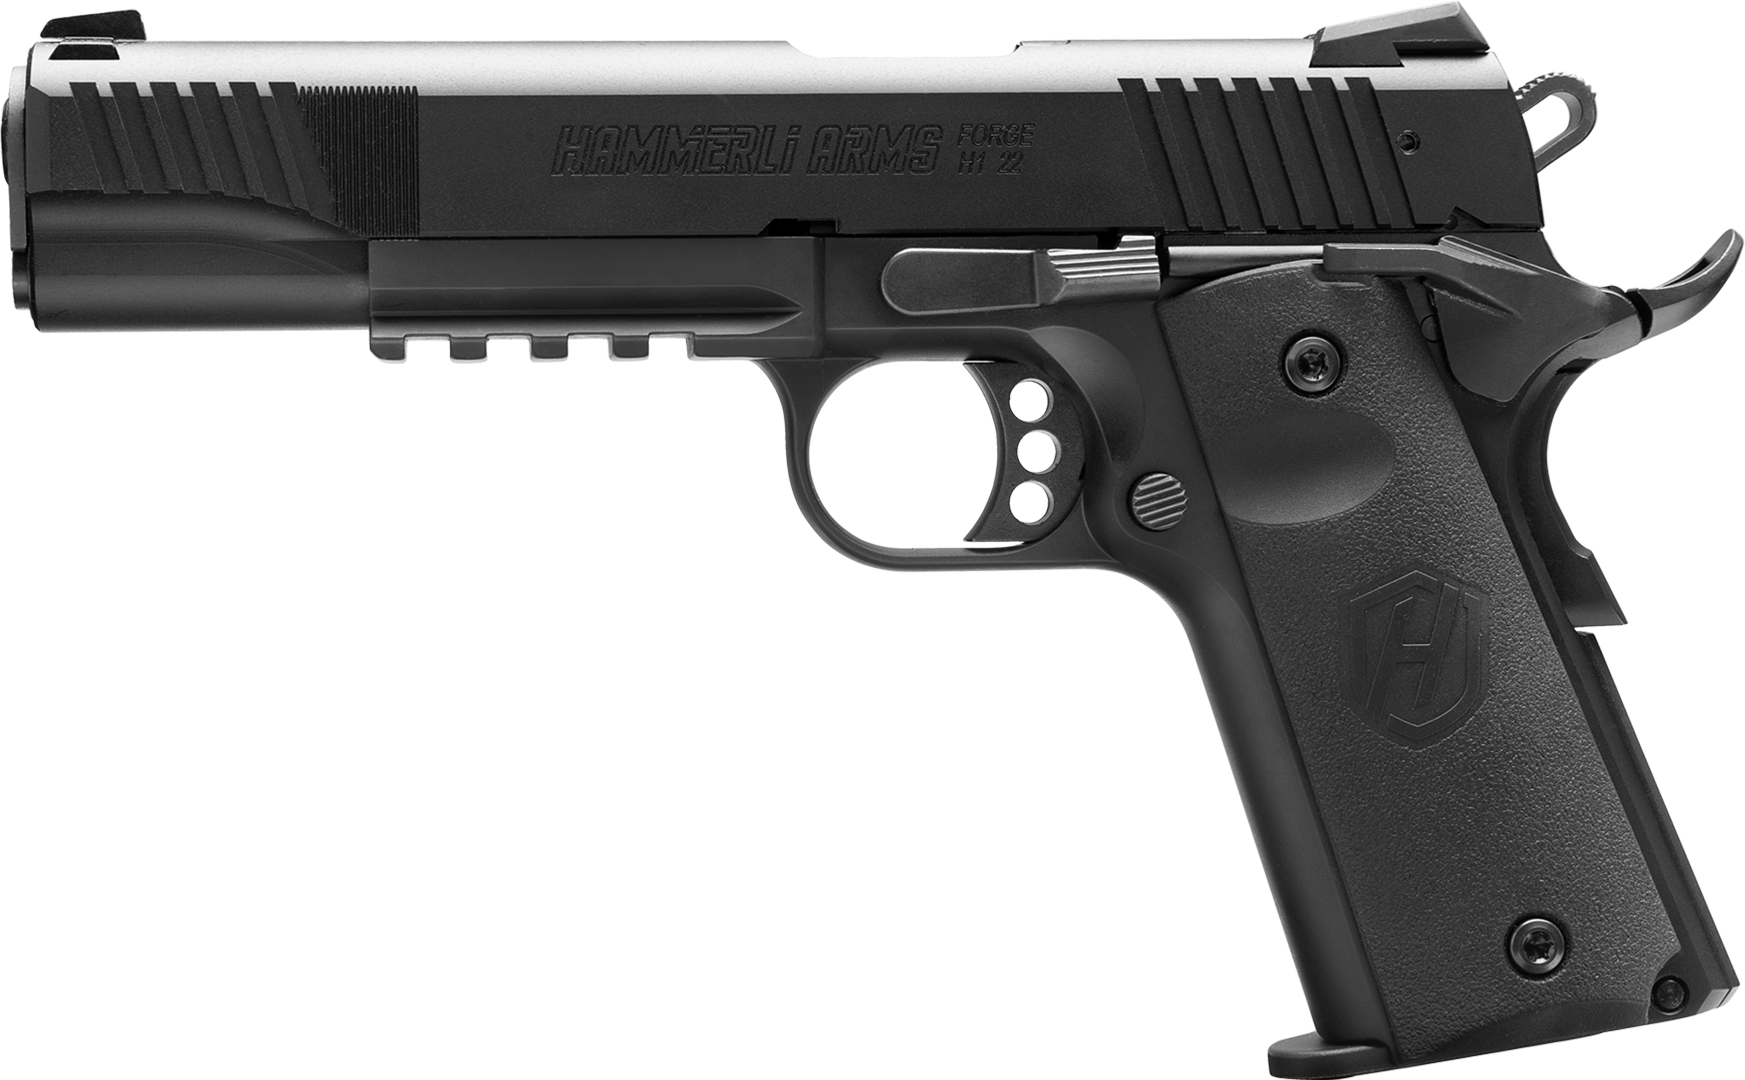 Hammerli Pistol Forge H1 5” - Left View